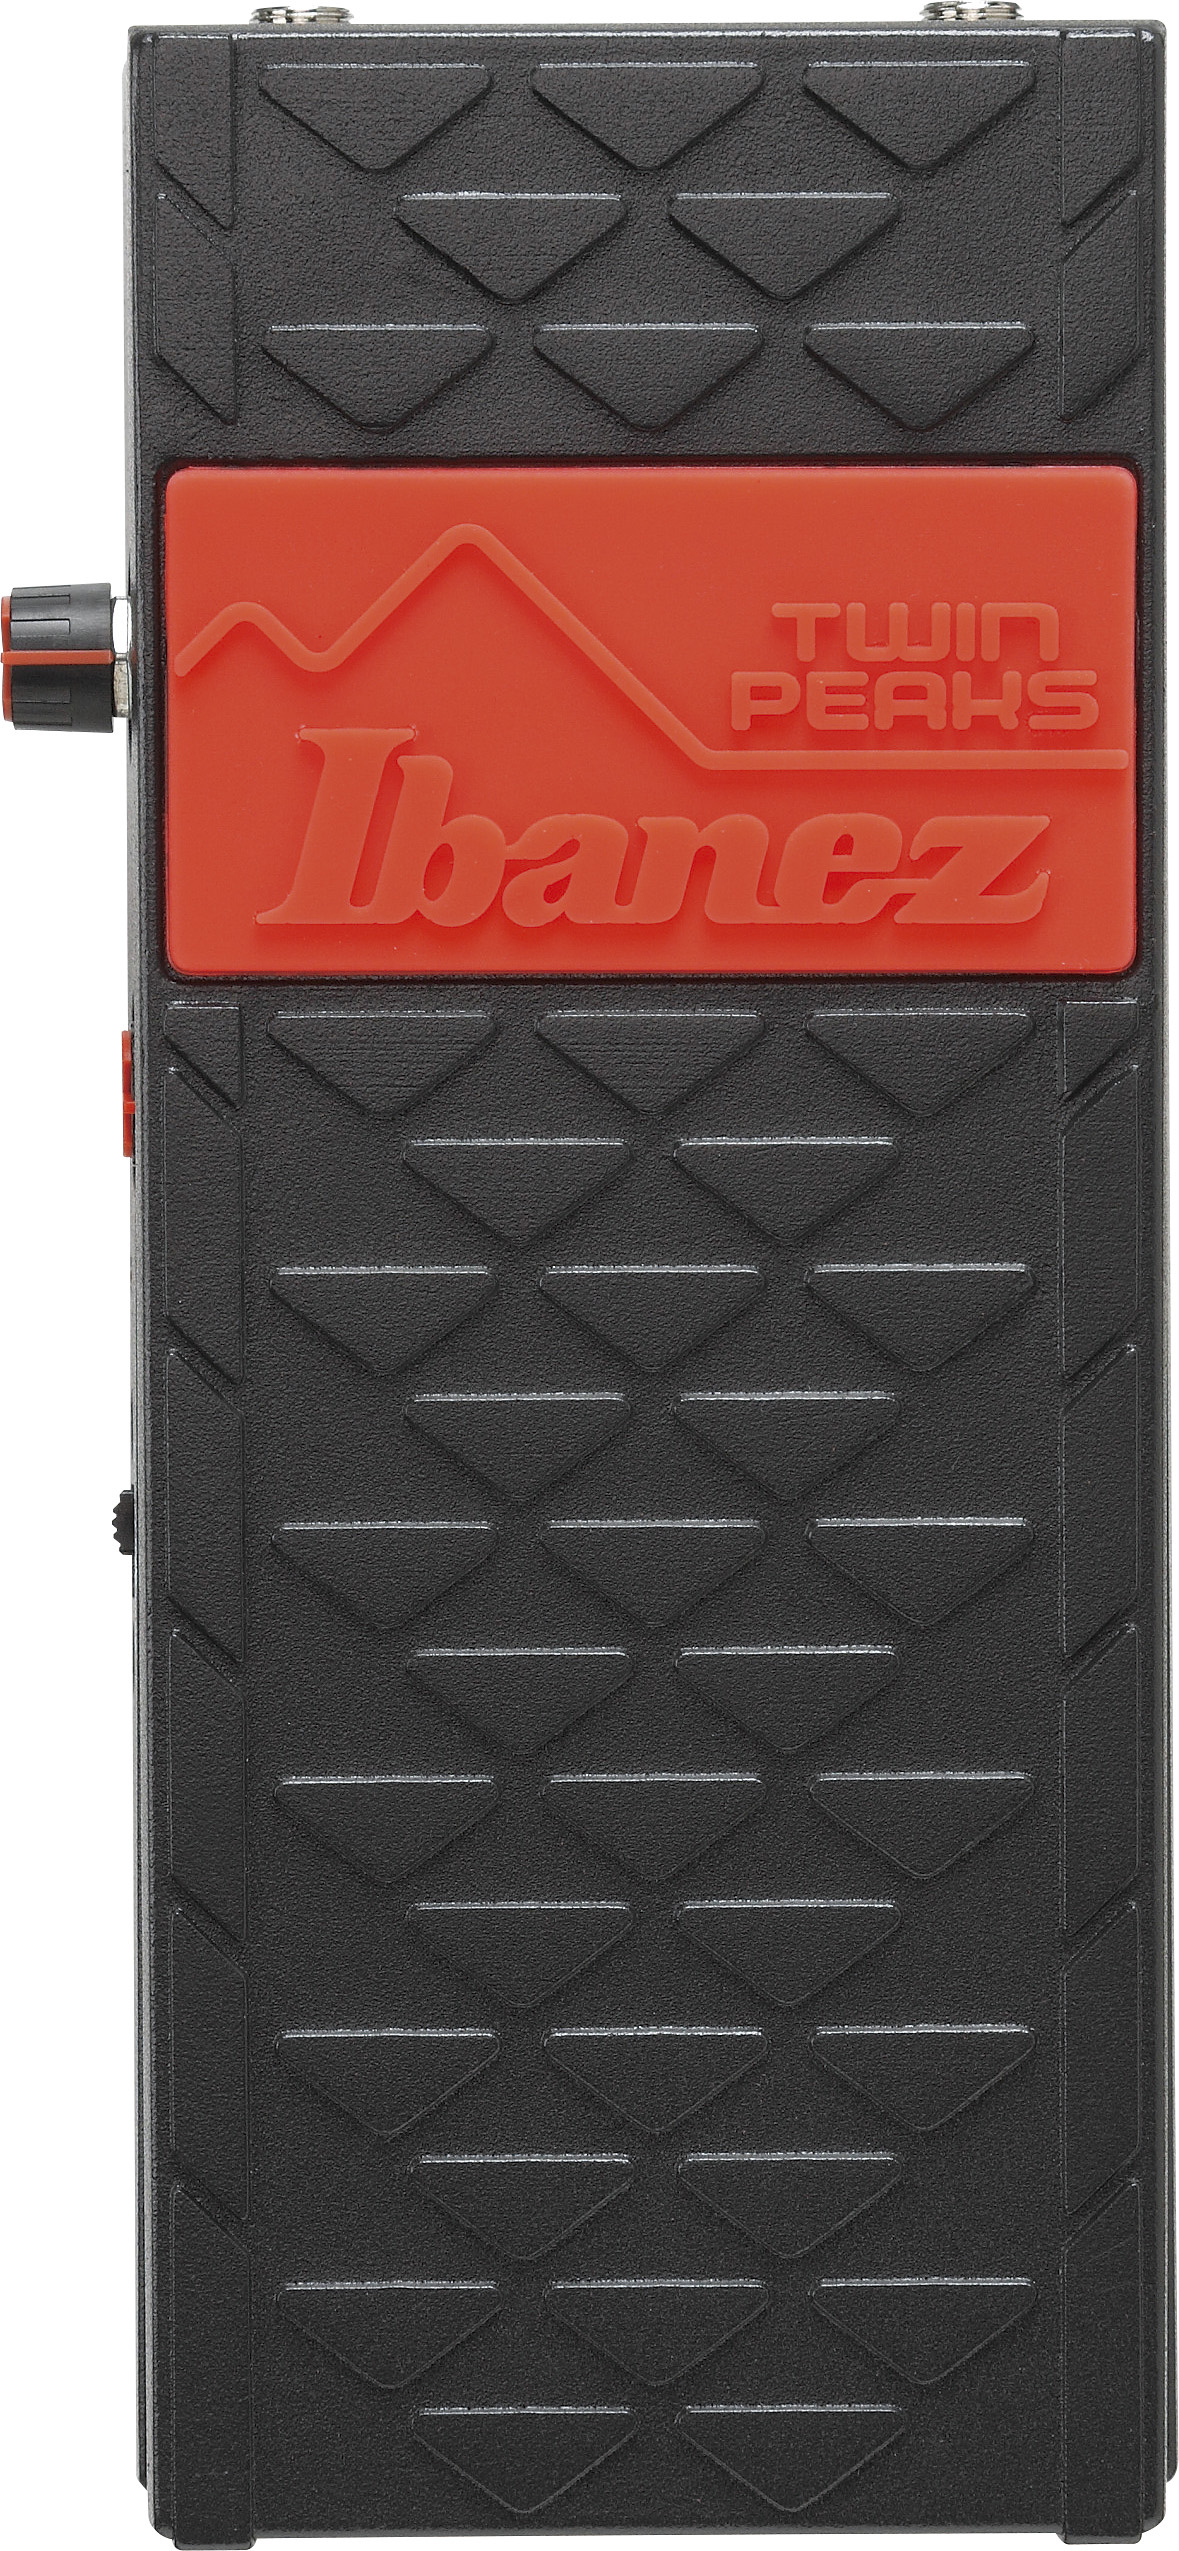 Ibanez Twp10 Twin Peaks Wah - Pedal wah / filtro - Variation 3